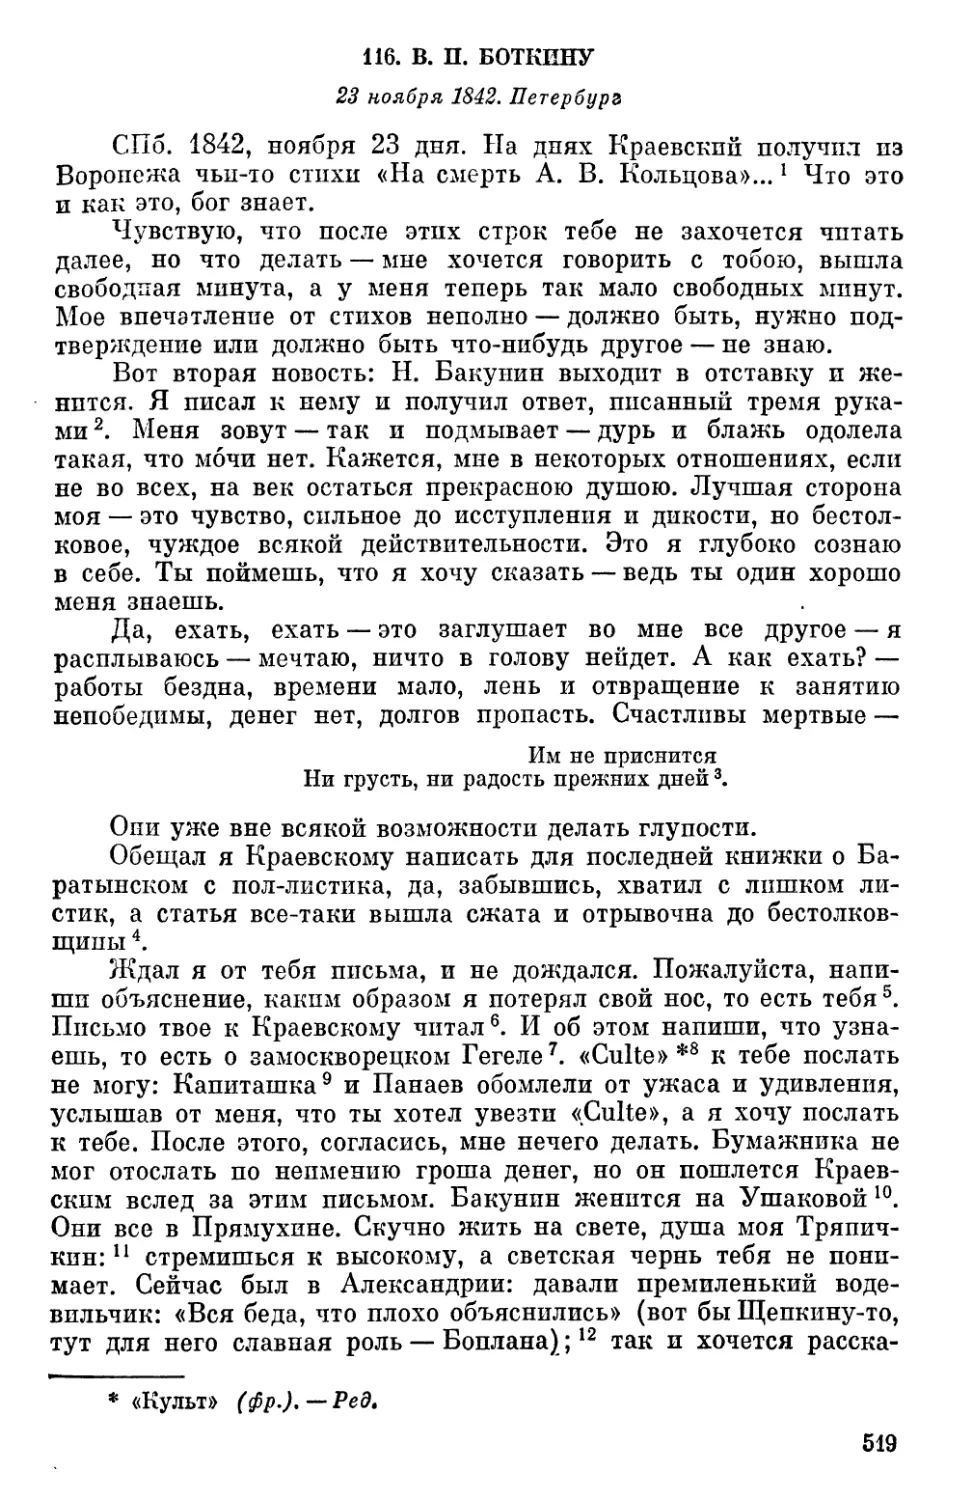 116. В. П. Боткину. 23 ноября 1842